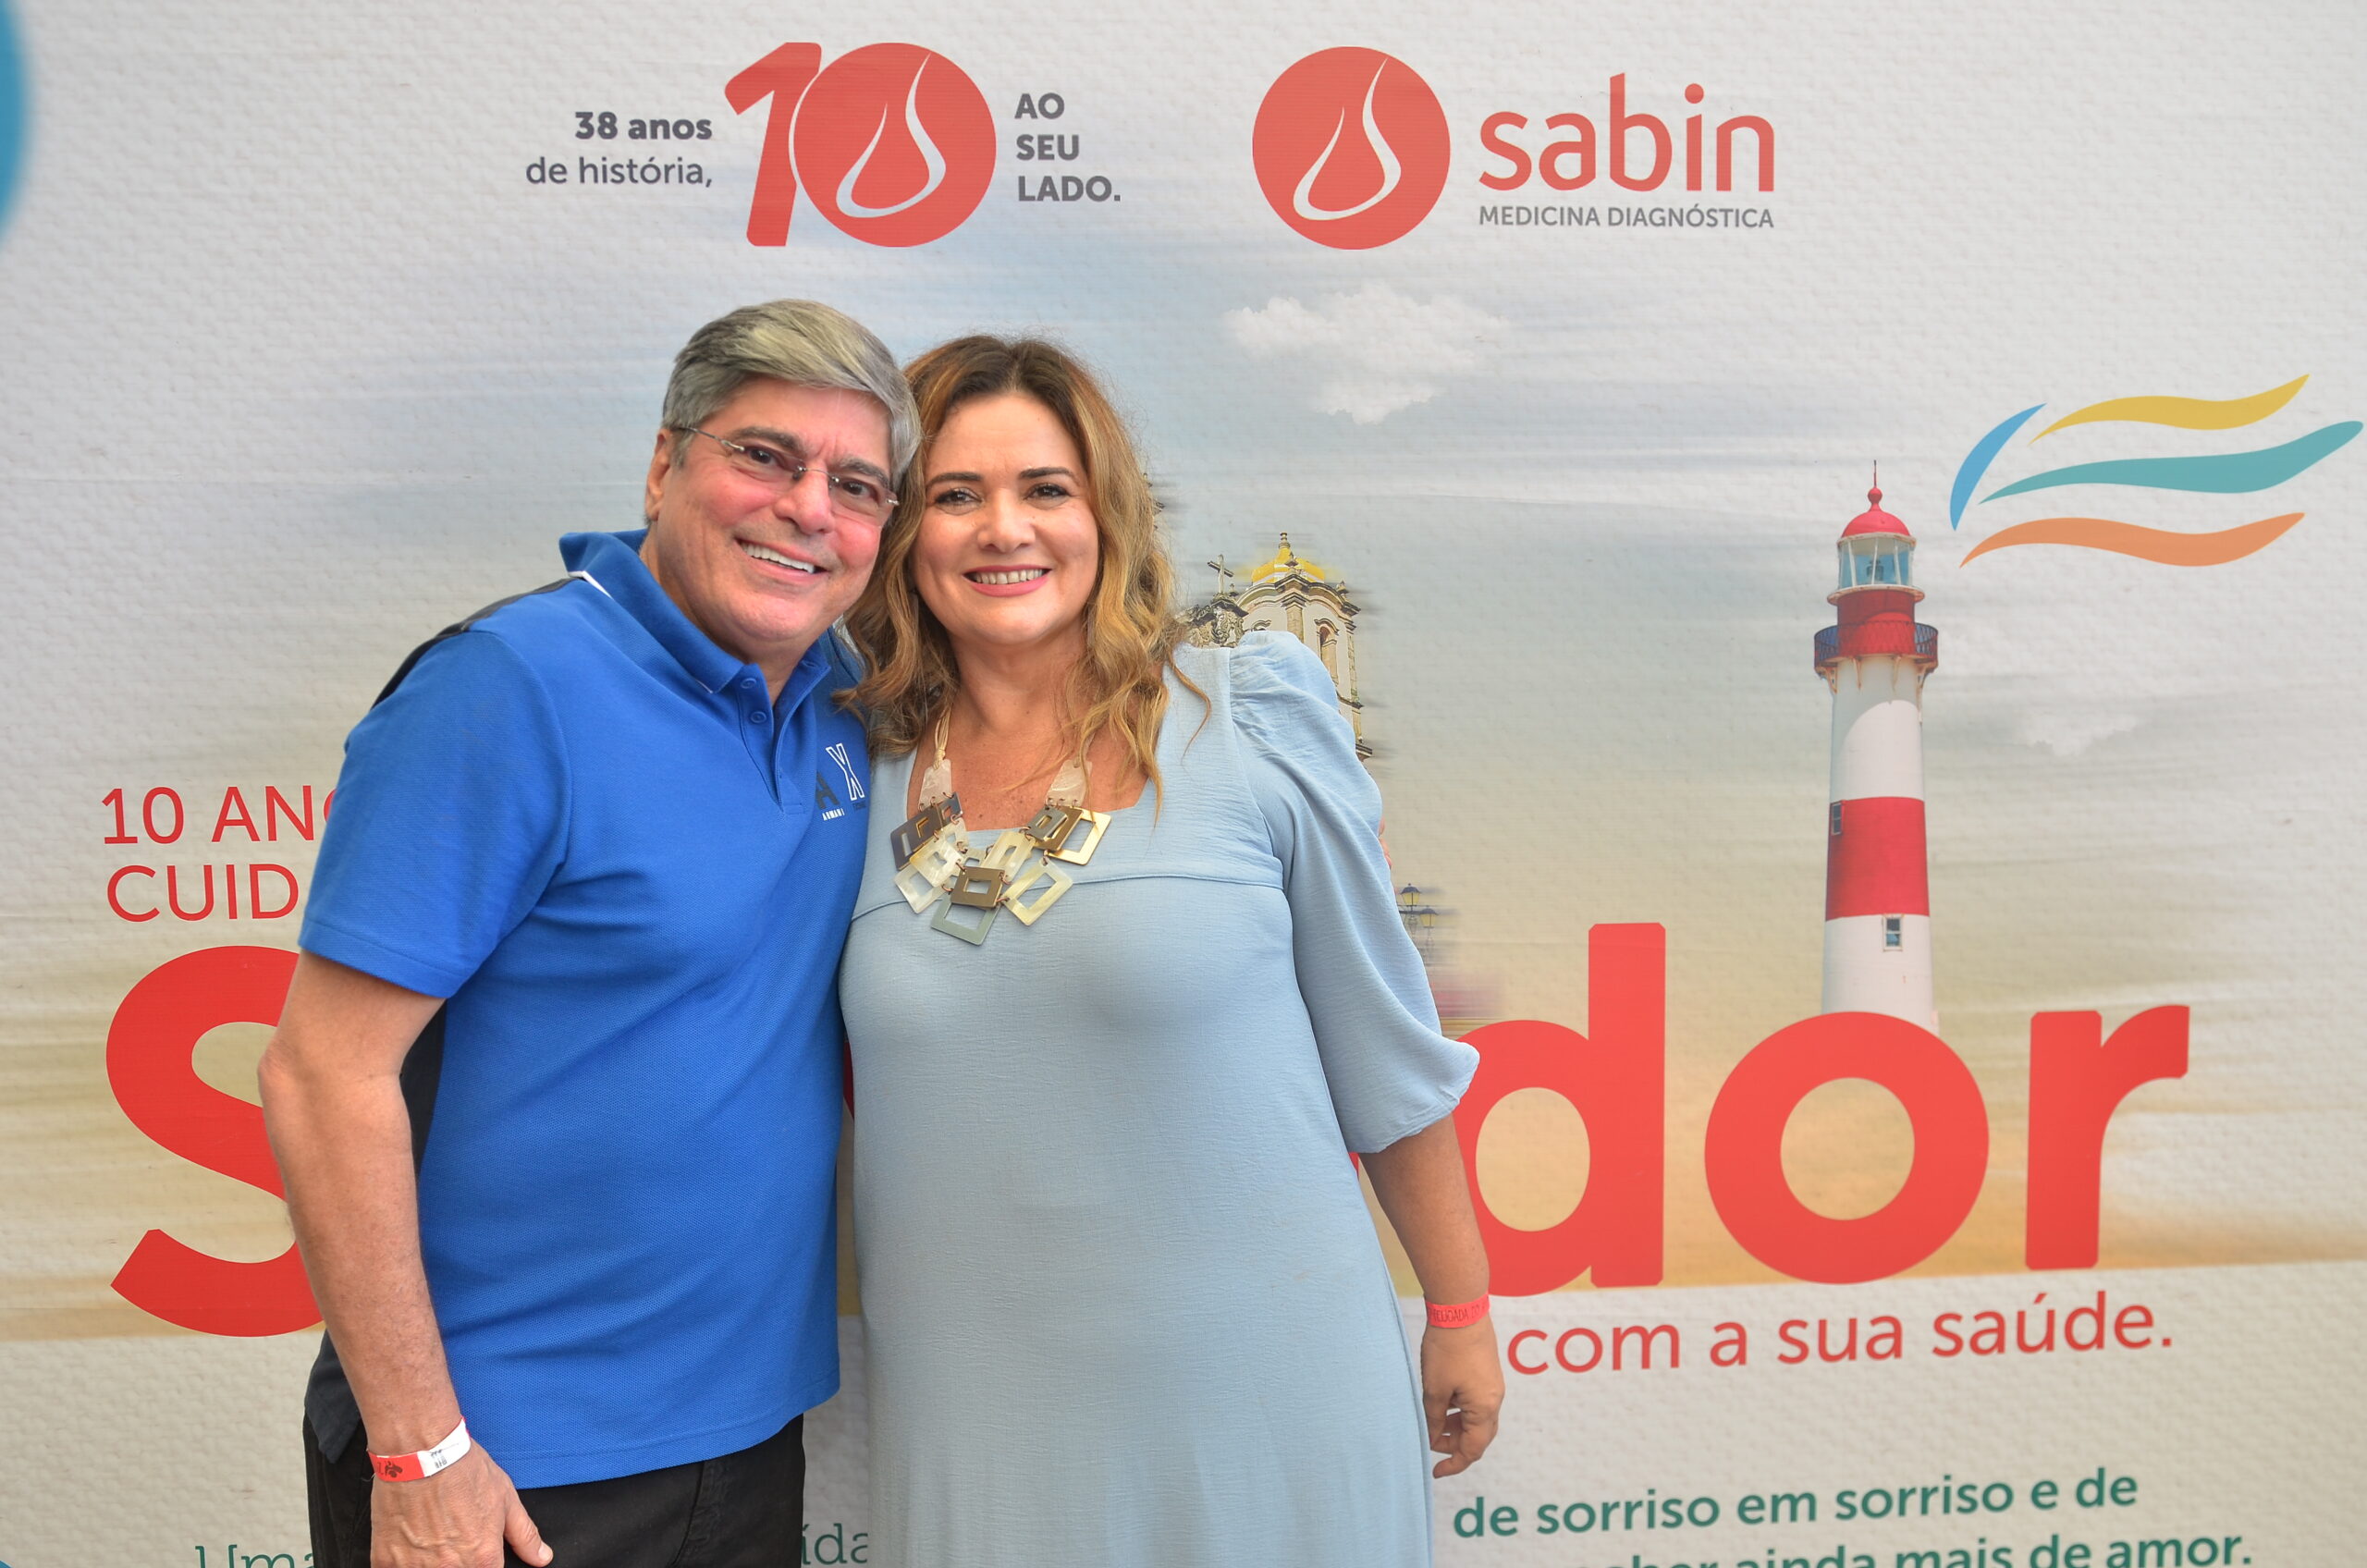 Grupo Sabin investe há 10 anos na melhoria da qualidade de vida da população de Salvador